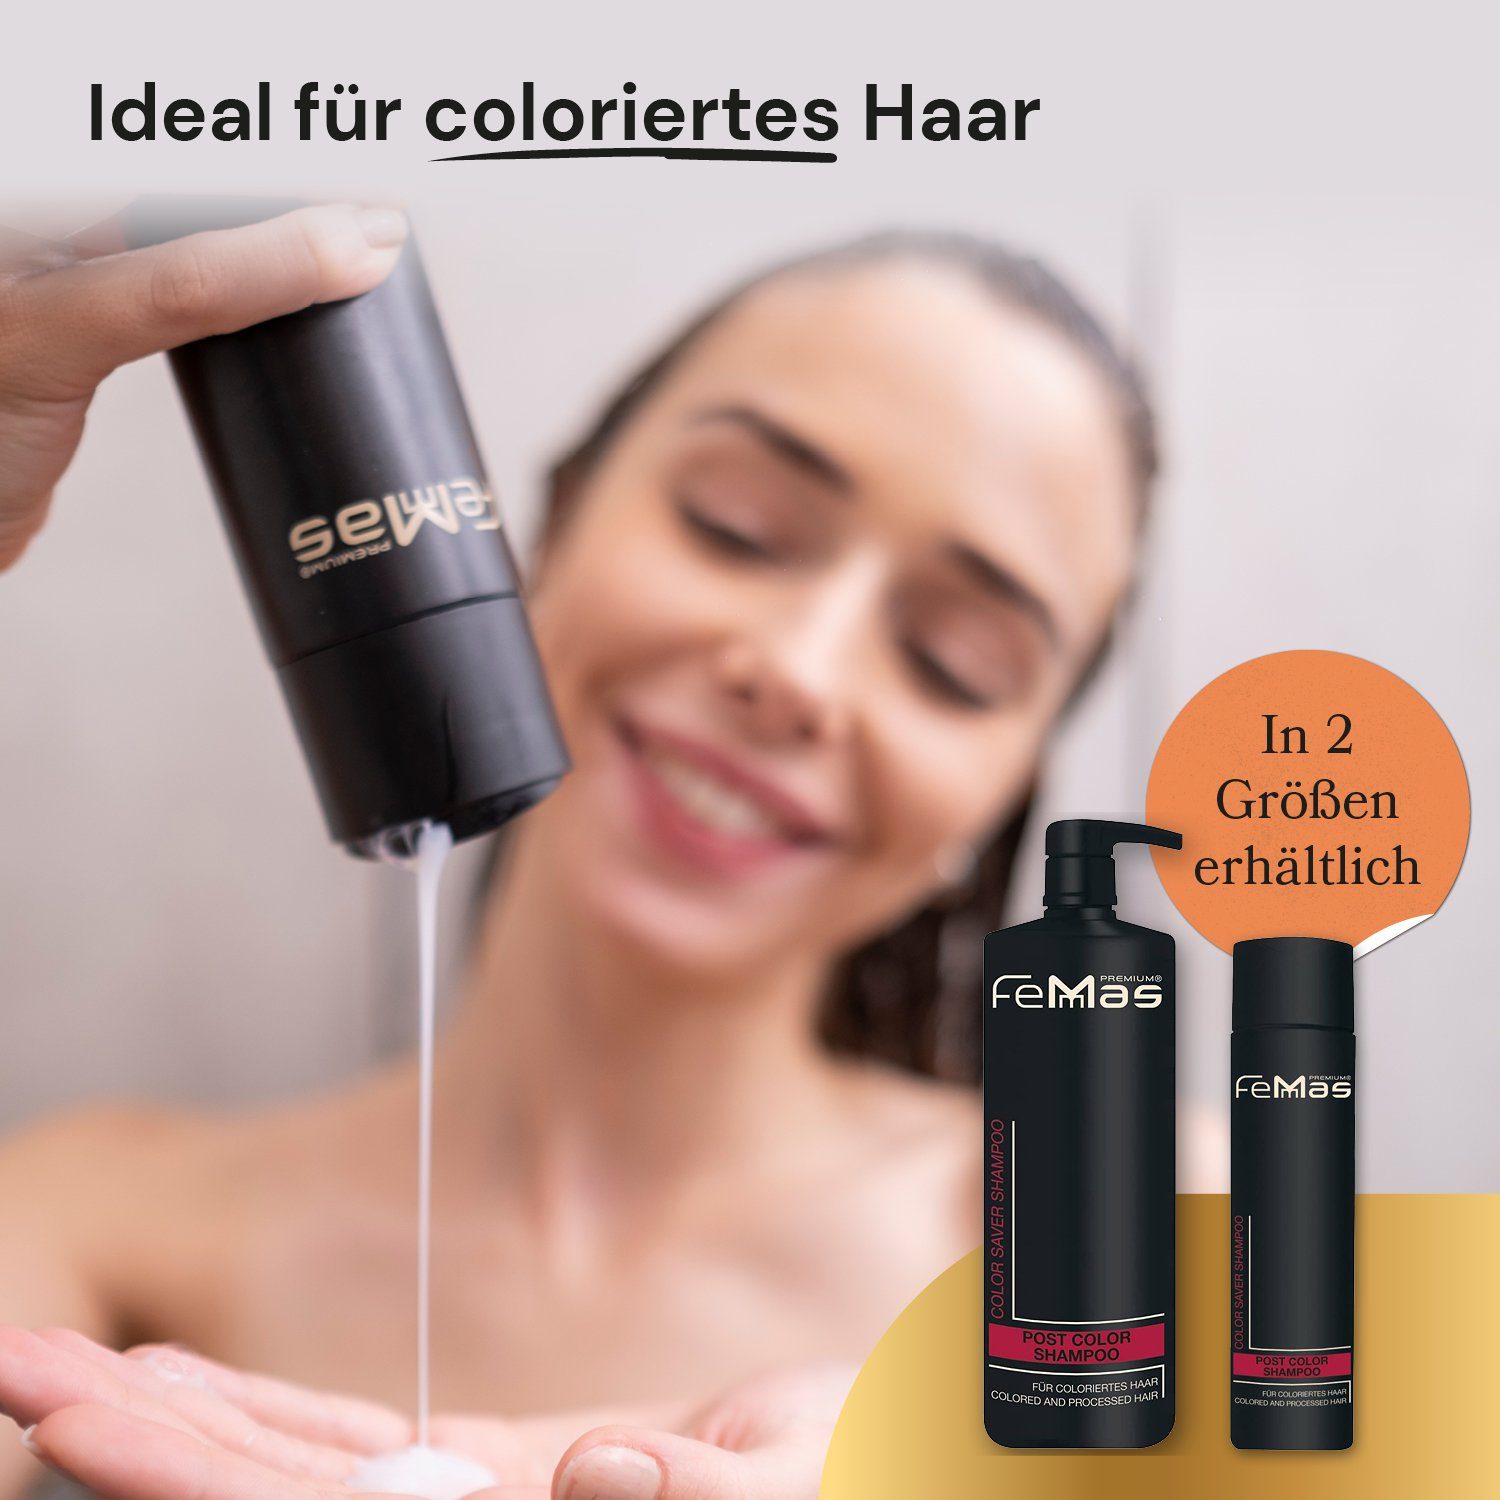 250ml 250ml Color Premium Shampoo Femmas FemMas Color Saver Haarpflege-Set Saver + Maske